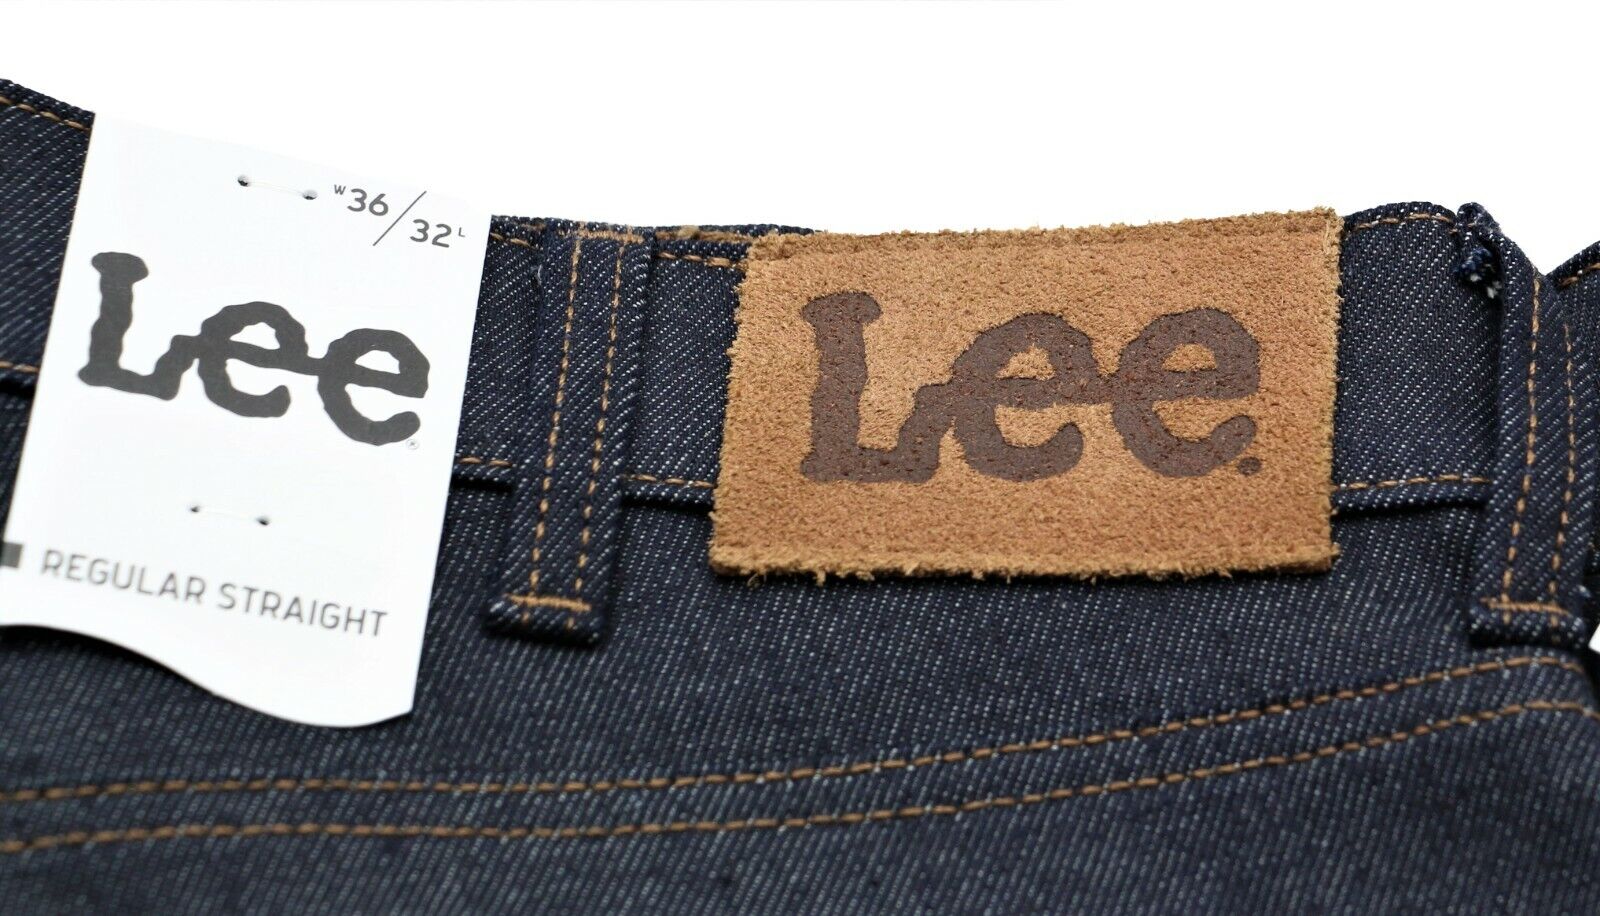 Группа товаров: Джинсы Оригинальное название: New Lee Straight Leg Selvedge Jeans Dark Raw De...